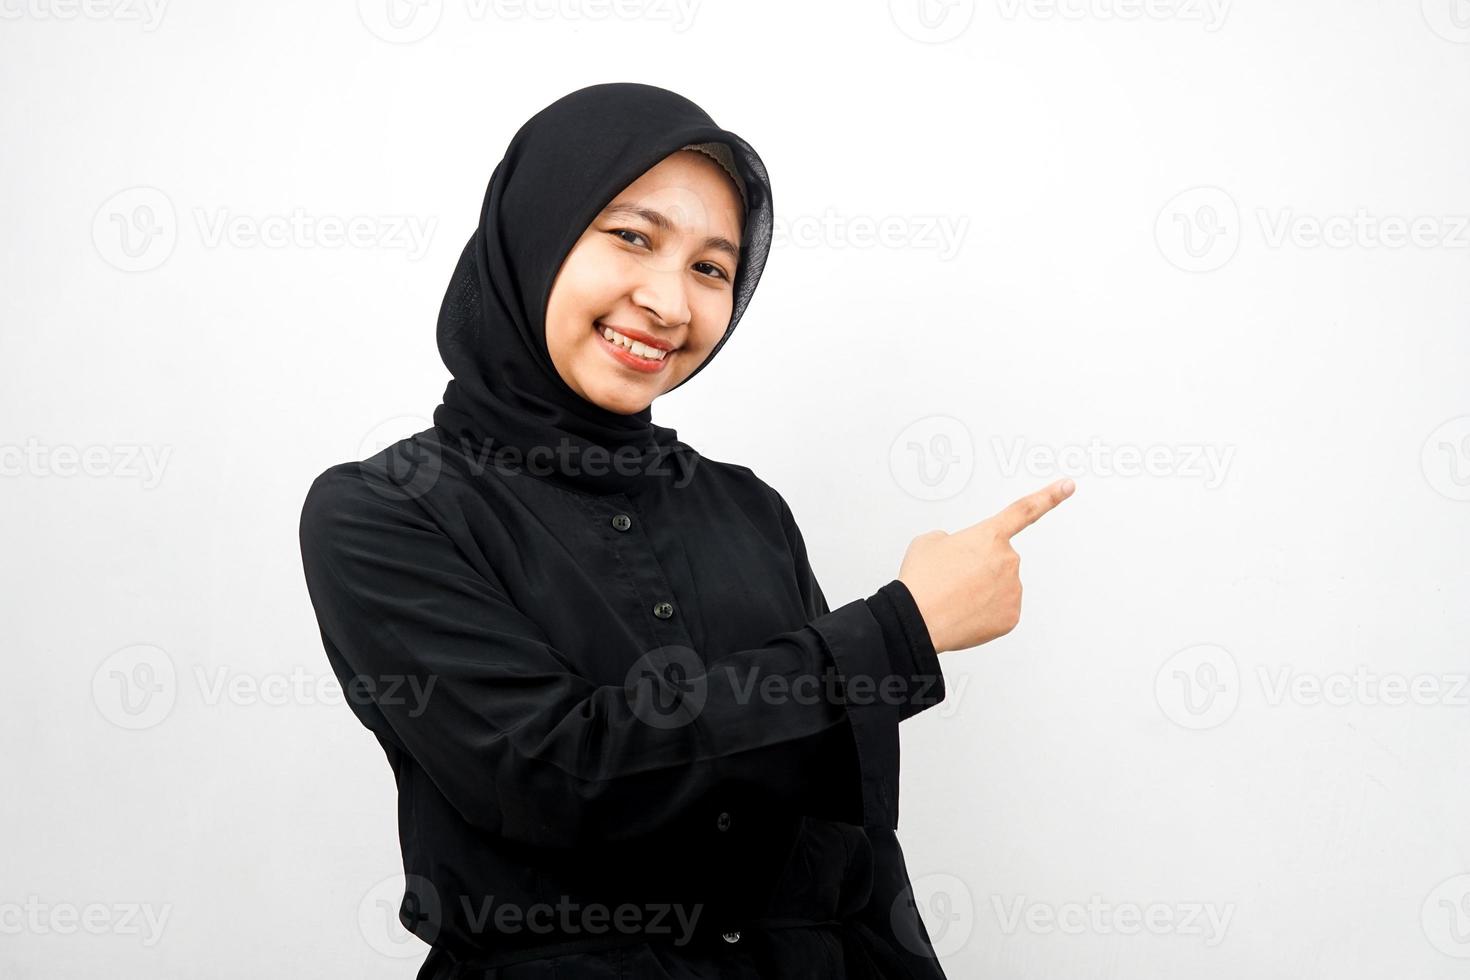 belle jeune femme musulmane asiatique avec les mains pointant l'espace vide présentant quelque chose, souriant confiant, enthousiaste, joyeux, regardant la caméra, isolé sur fond blanc, concept publicitaire photo